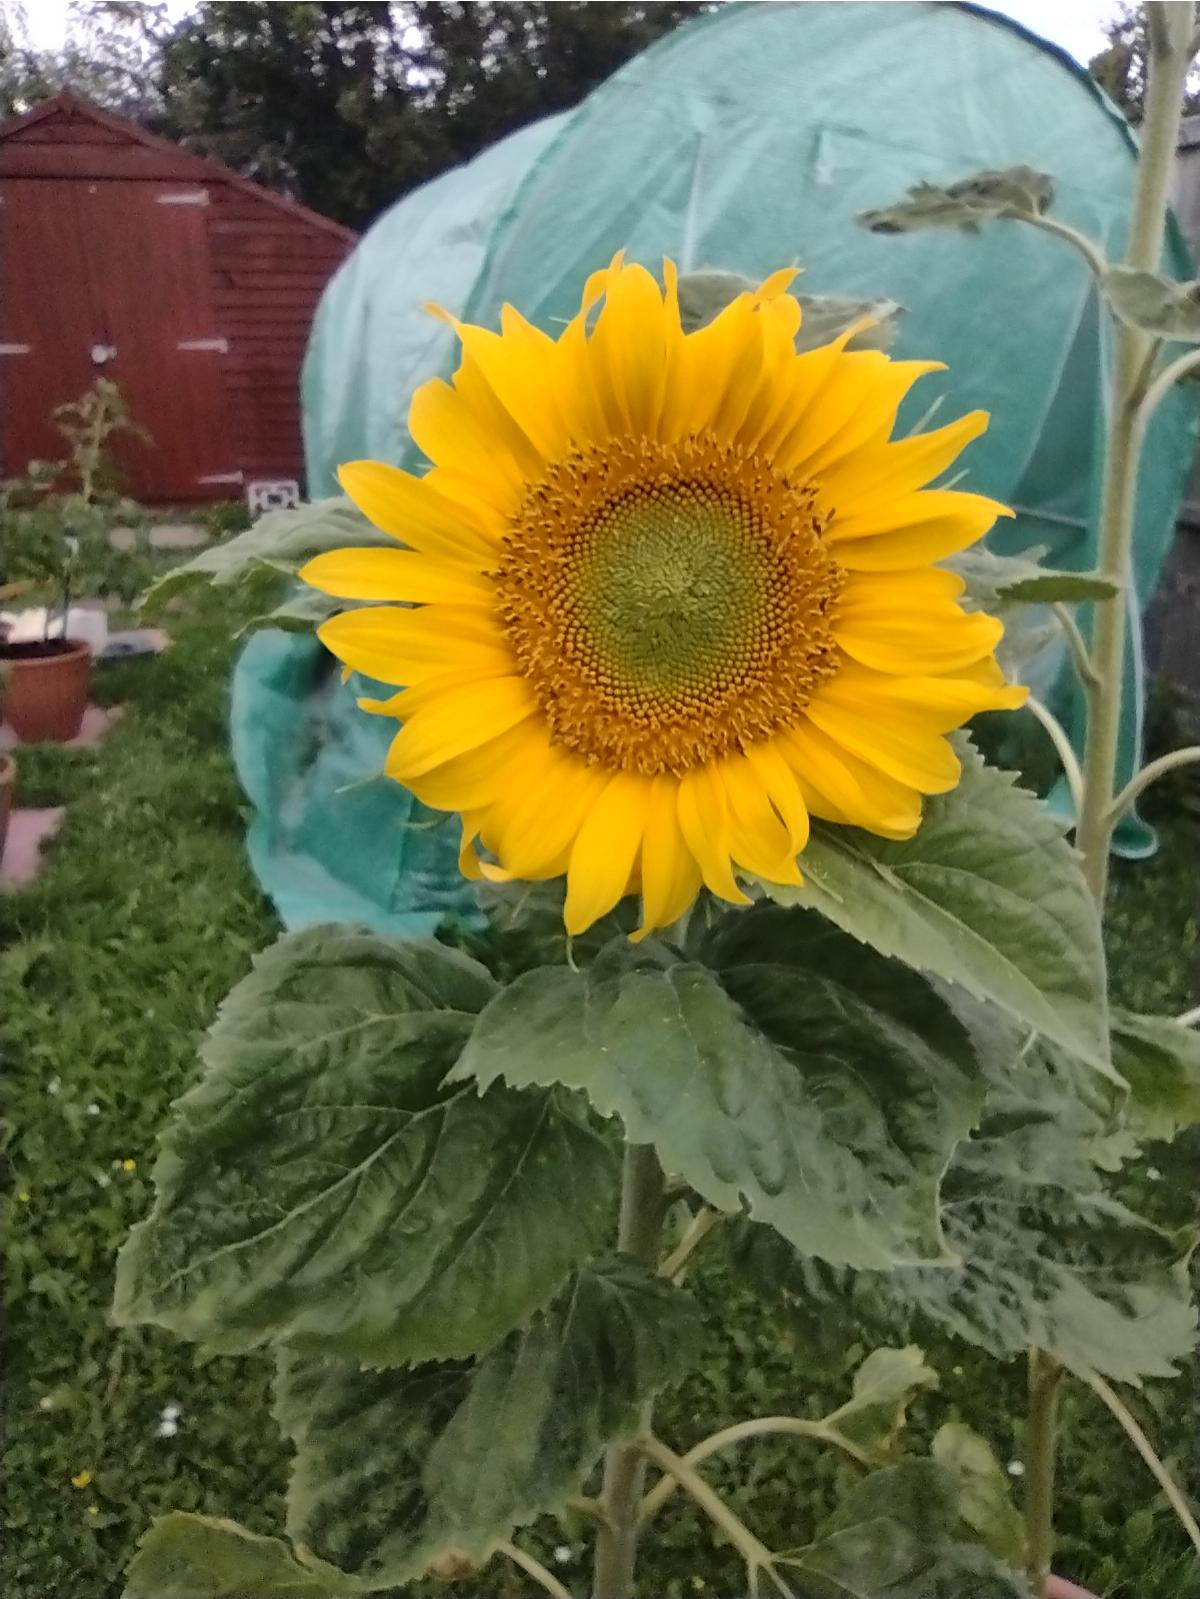 Geraint O - Sunflower selfie